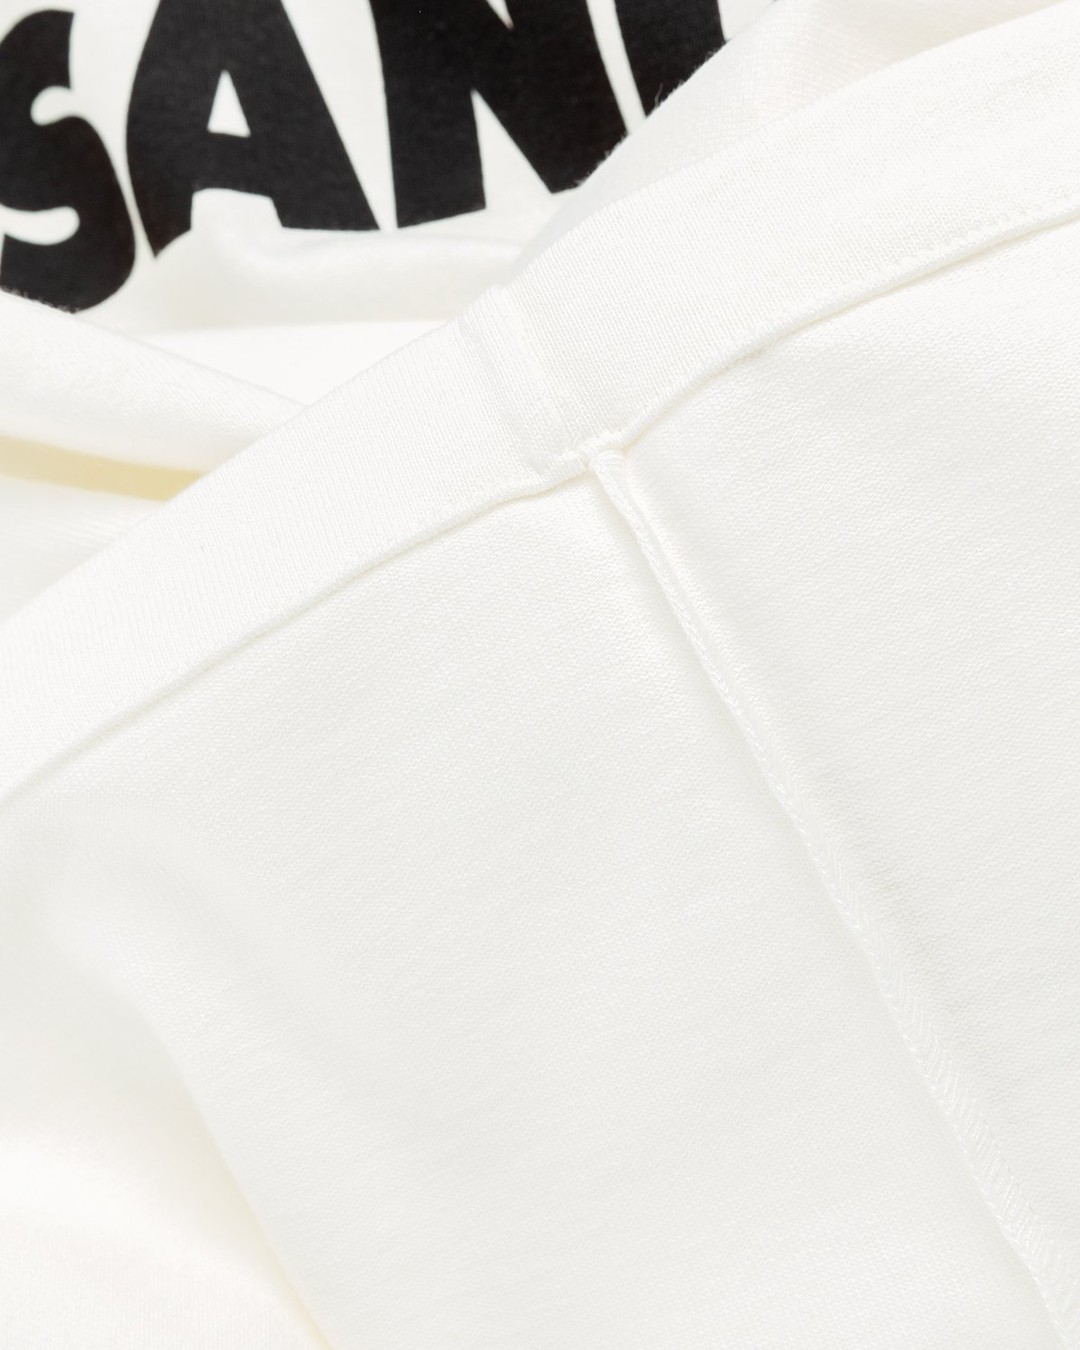 Jil Sander – Logo T-Shirt Natural | Highsnobiety Shop